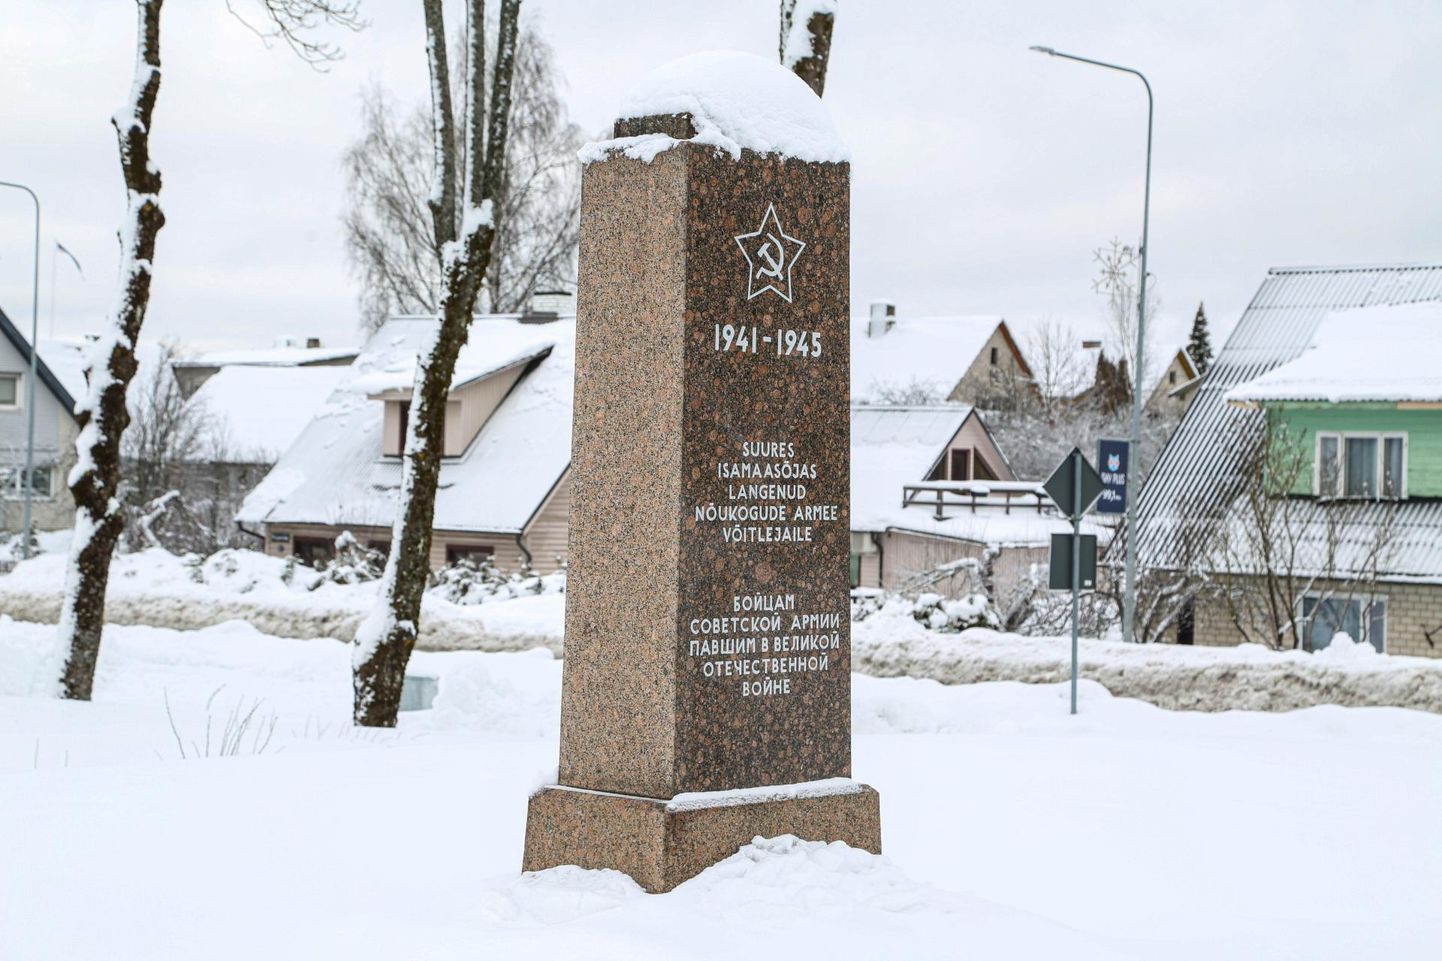 Nõukogude armee monument Otepää linnas. Ööklubi lammutamise järel kerkis ristmiku lähedusse tankla ja varem roheluse varjus olnud mälestis on nüüd hästi näha.